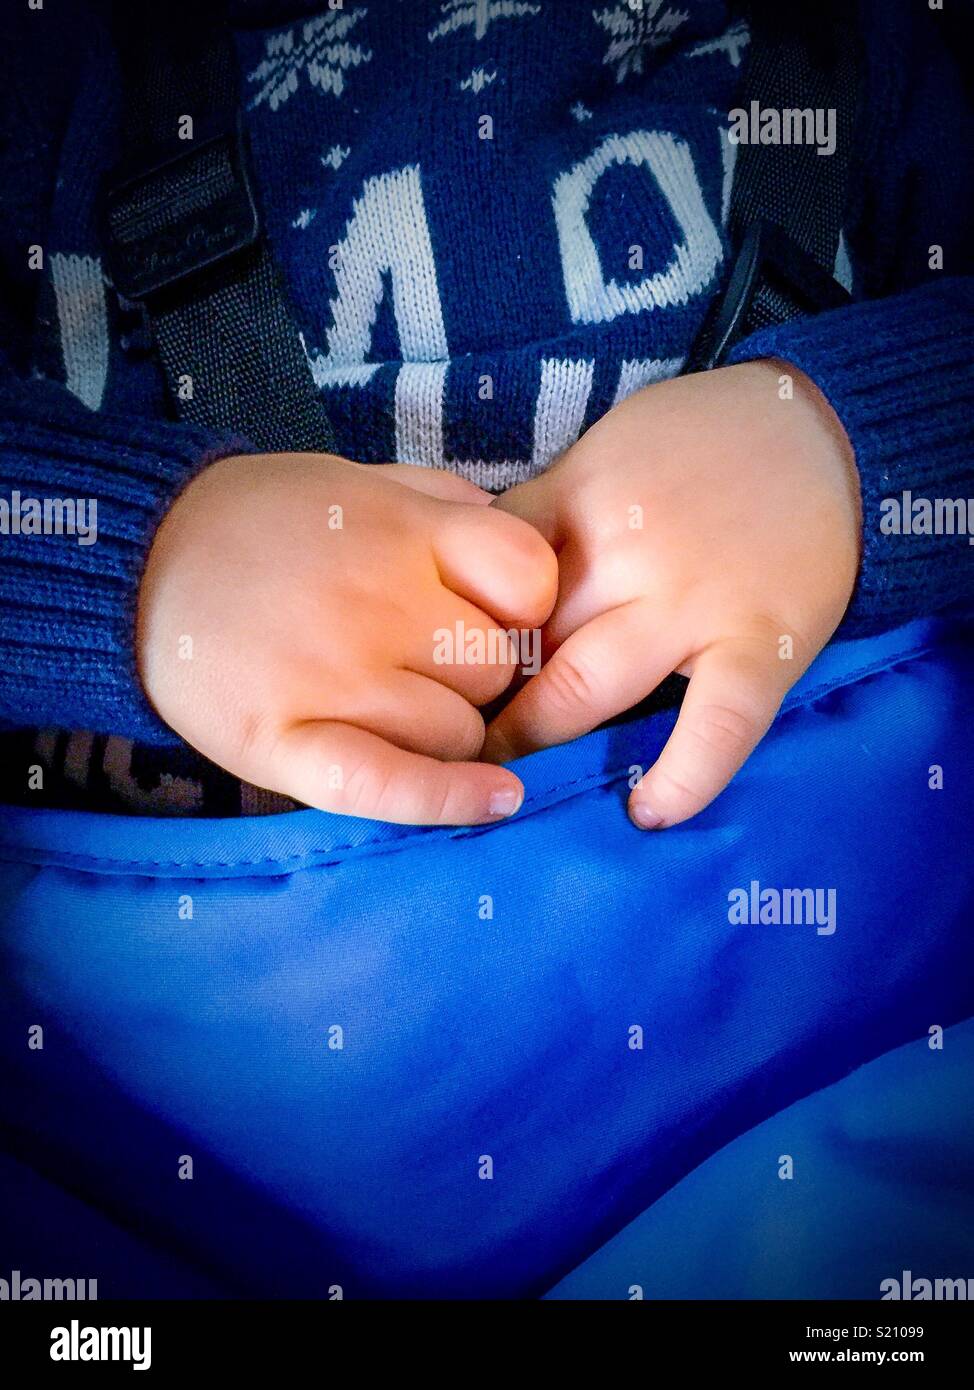 Baby hands, baby clutches hands in stroller Stock Photo